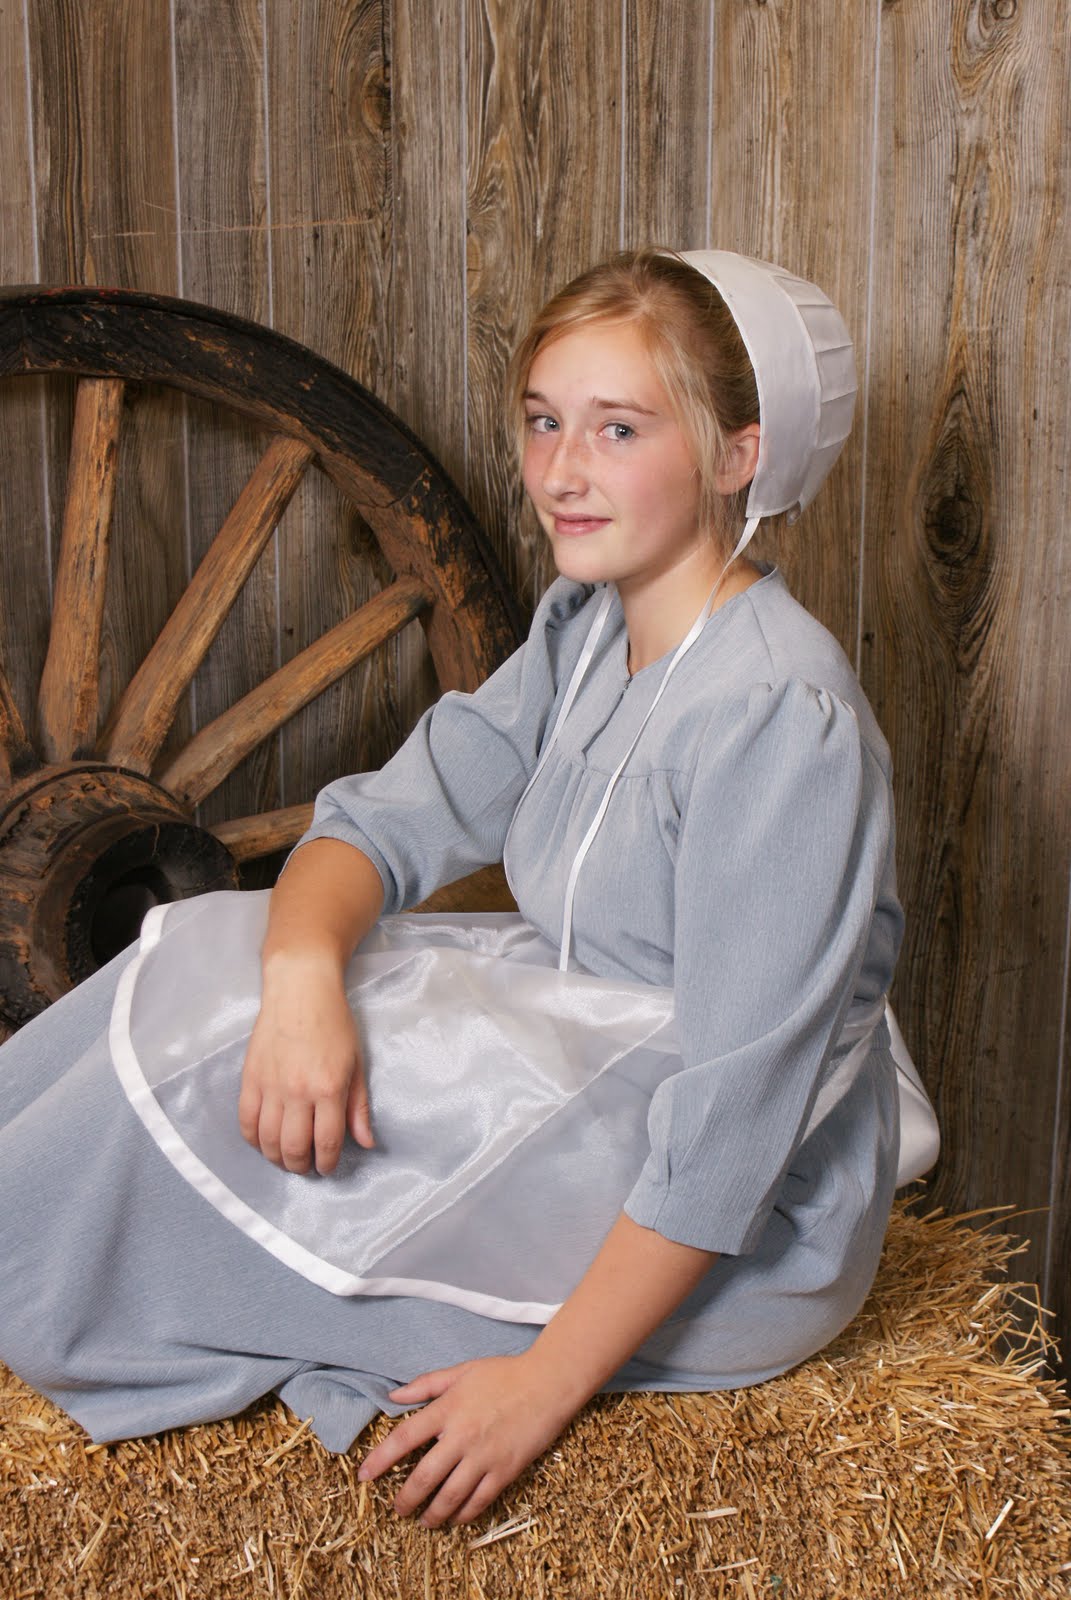 Naked Amish Girl Pics Hot Porno